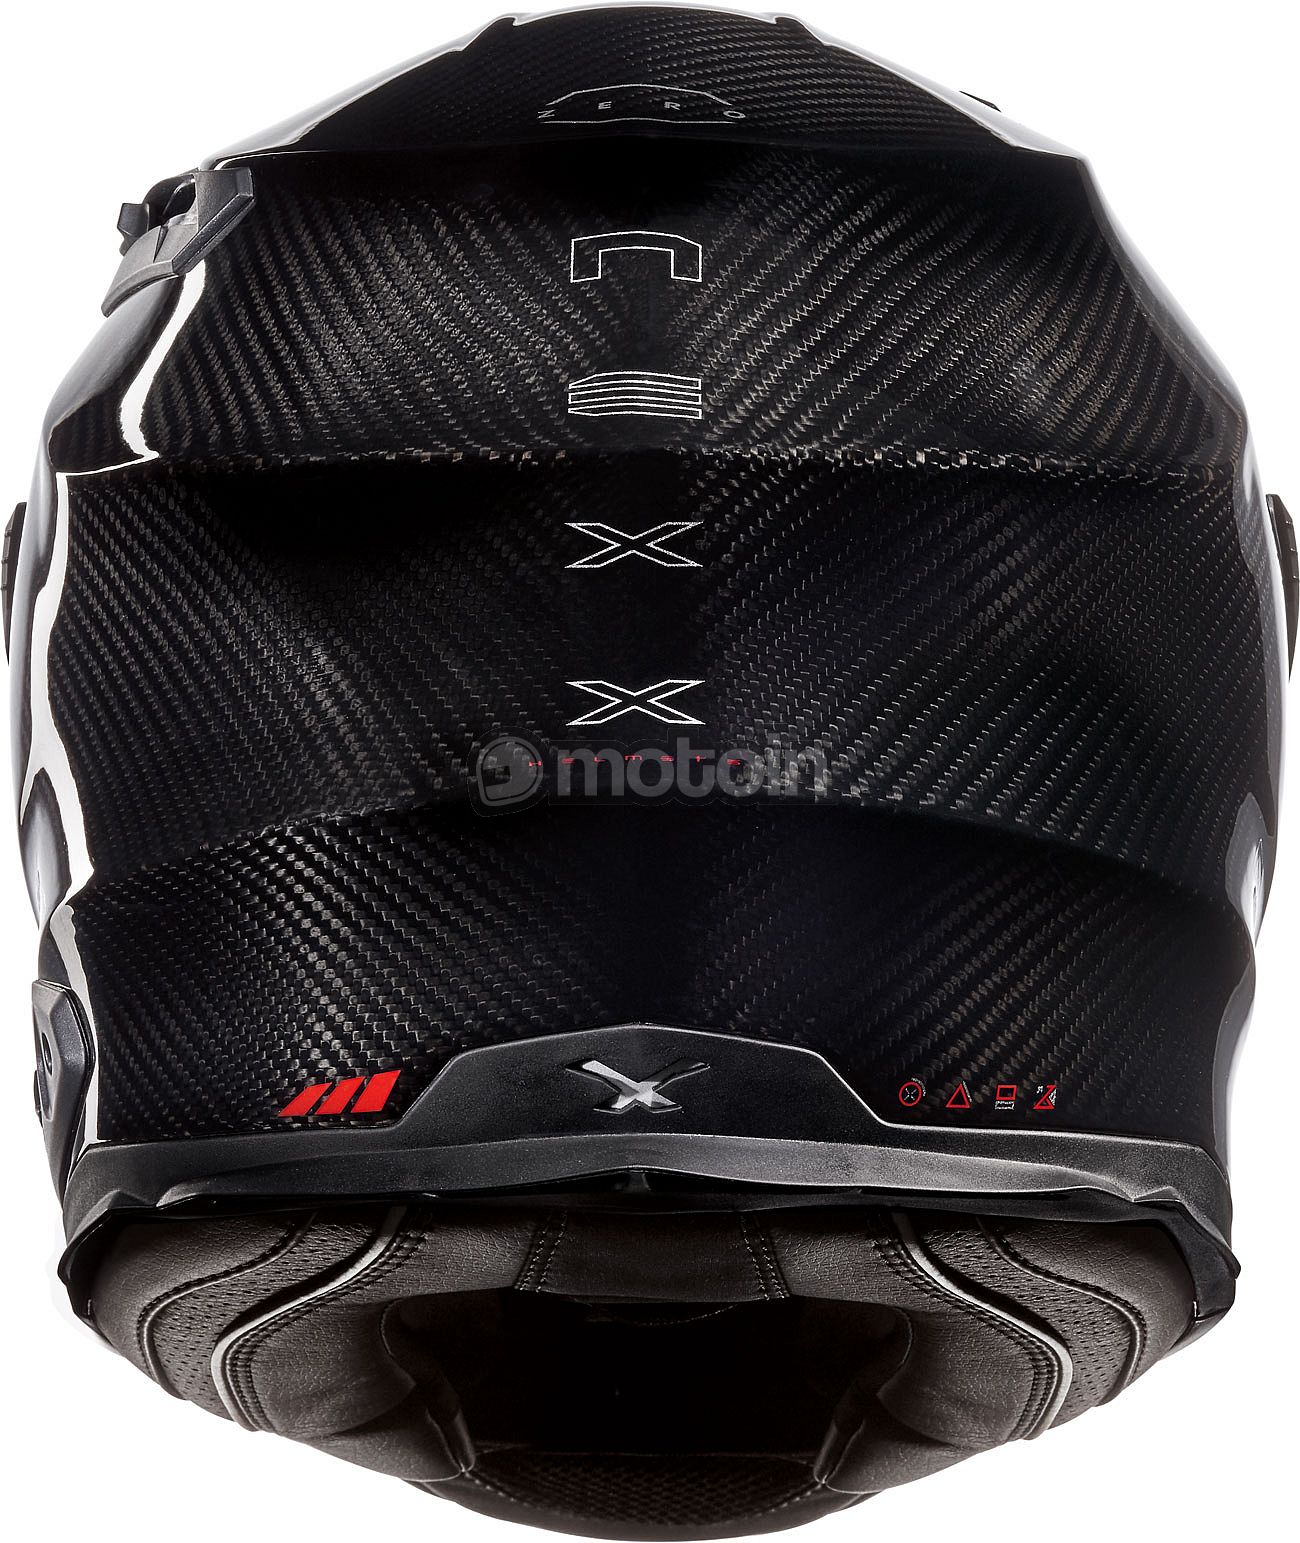 Nexx X.WST 2 Carbon Zero, integral helmet - motoin.de